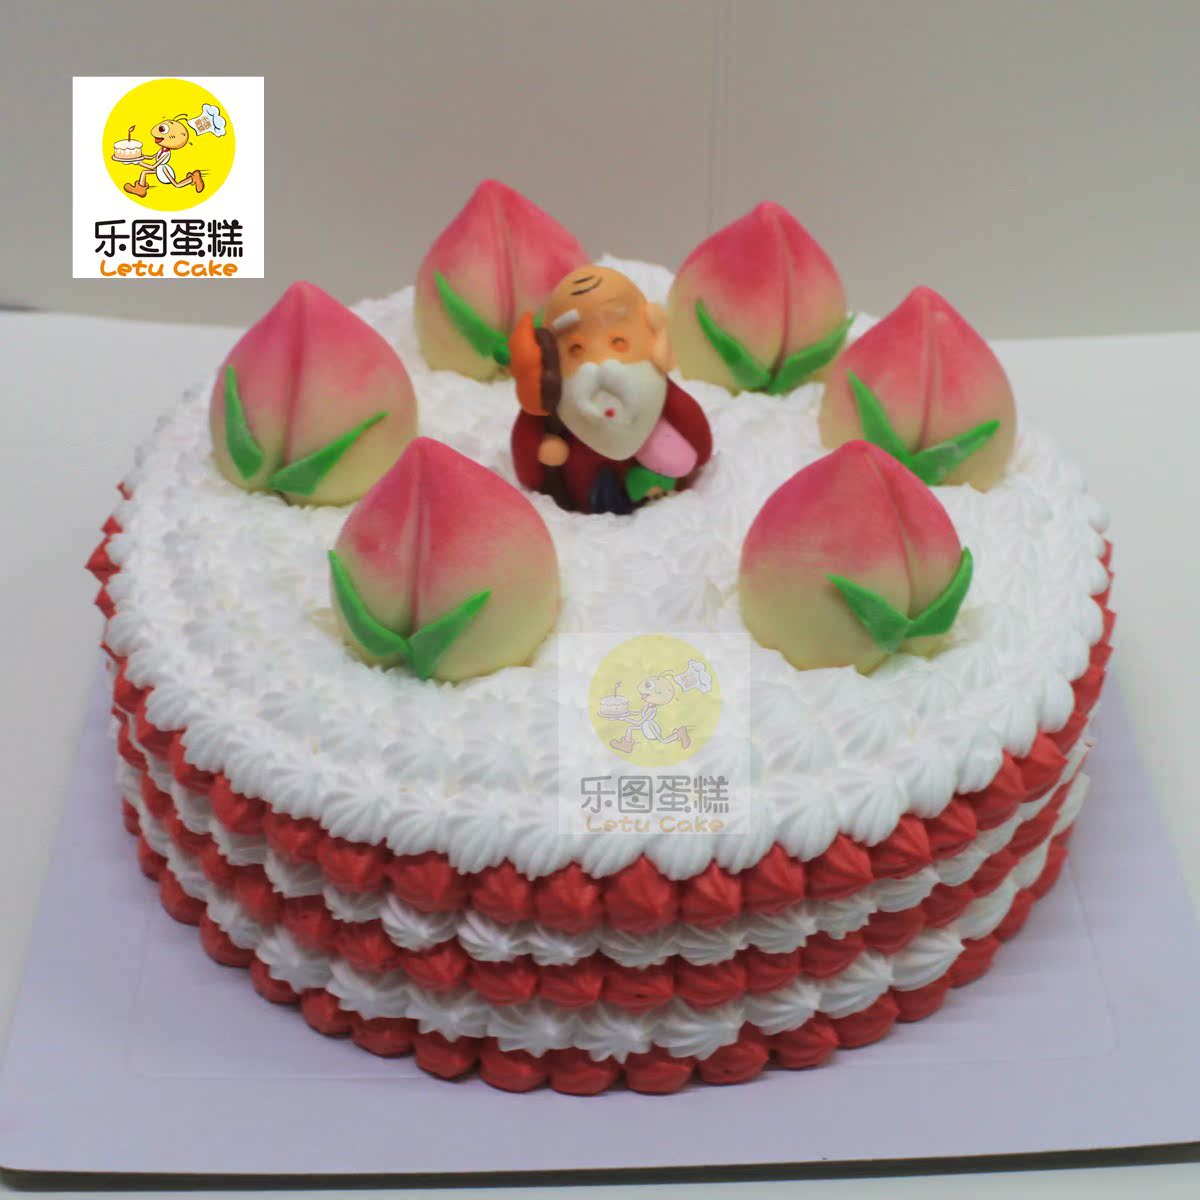 雨之家: 寿桃蛋糕 《Peach Birthday Cake》